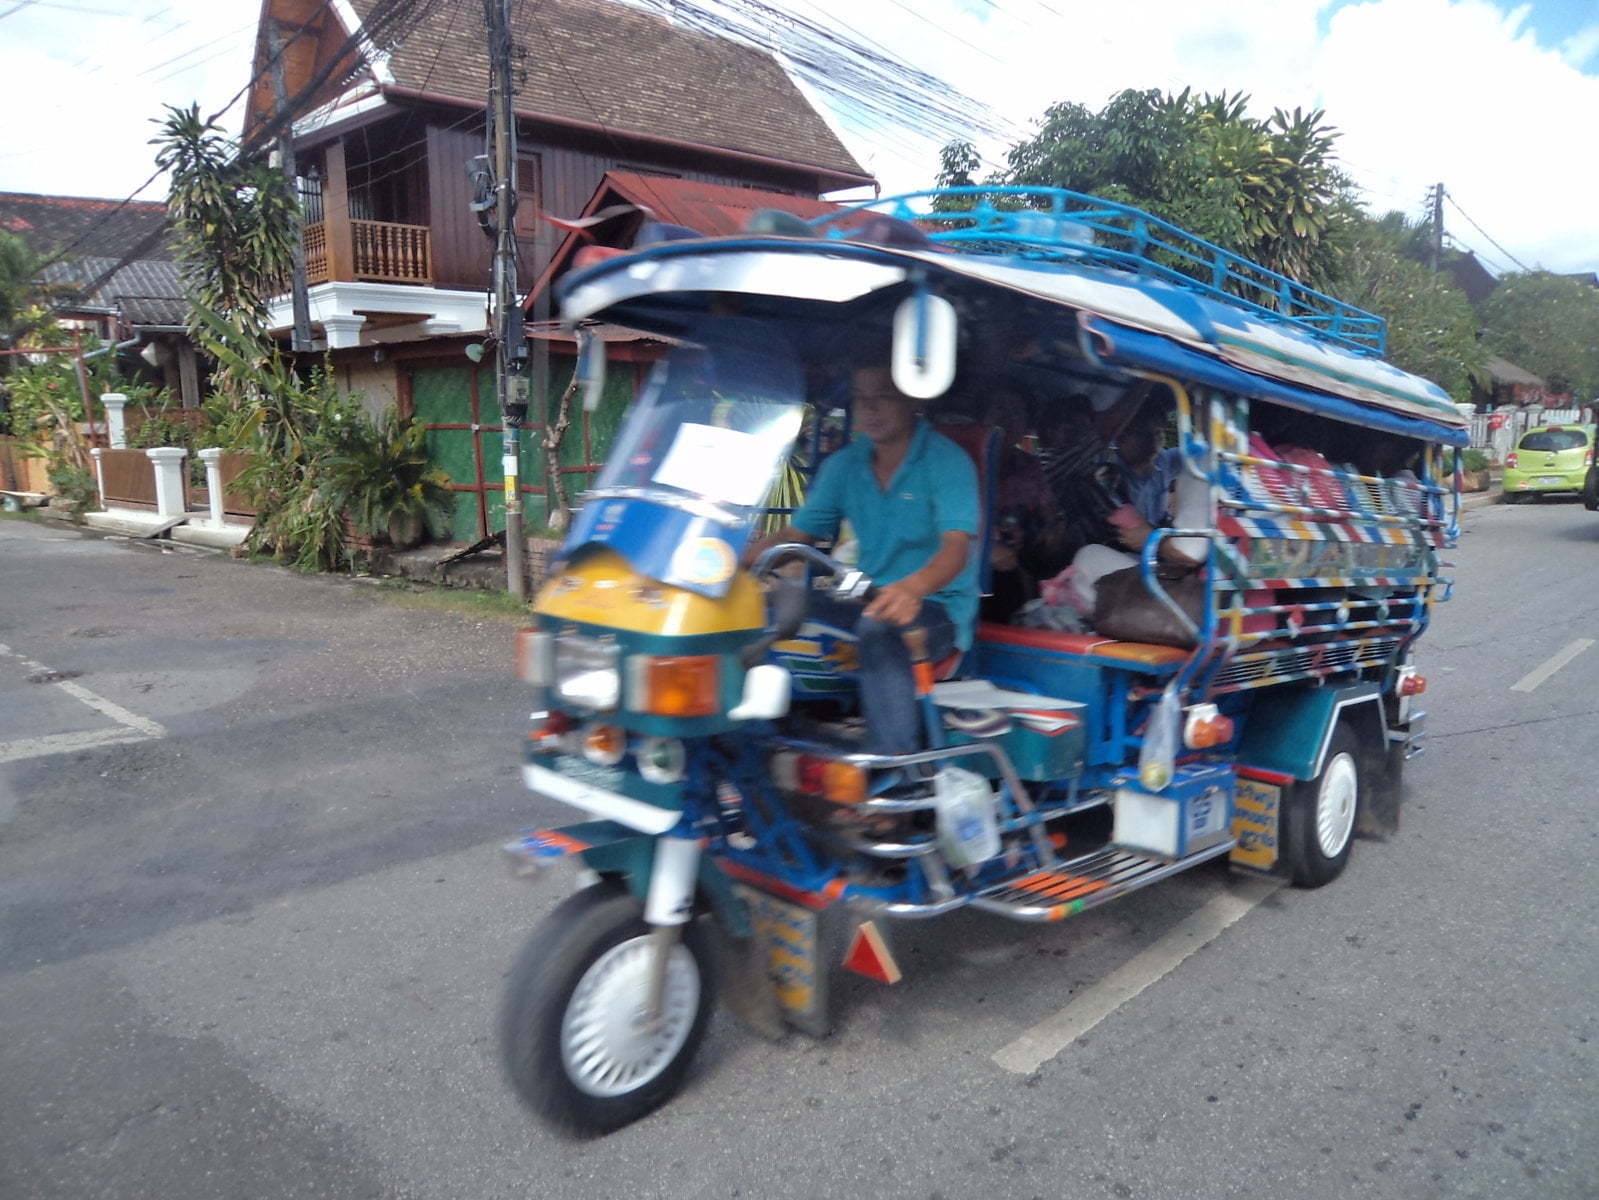 Transporte público coletivo em Luang Prabang, Laos